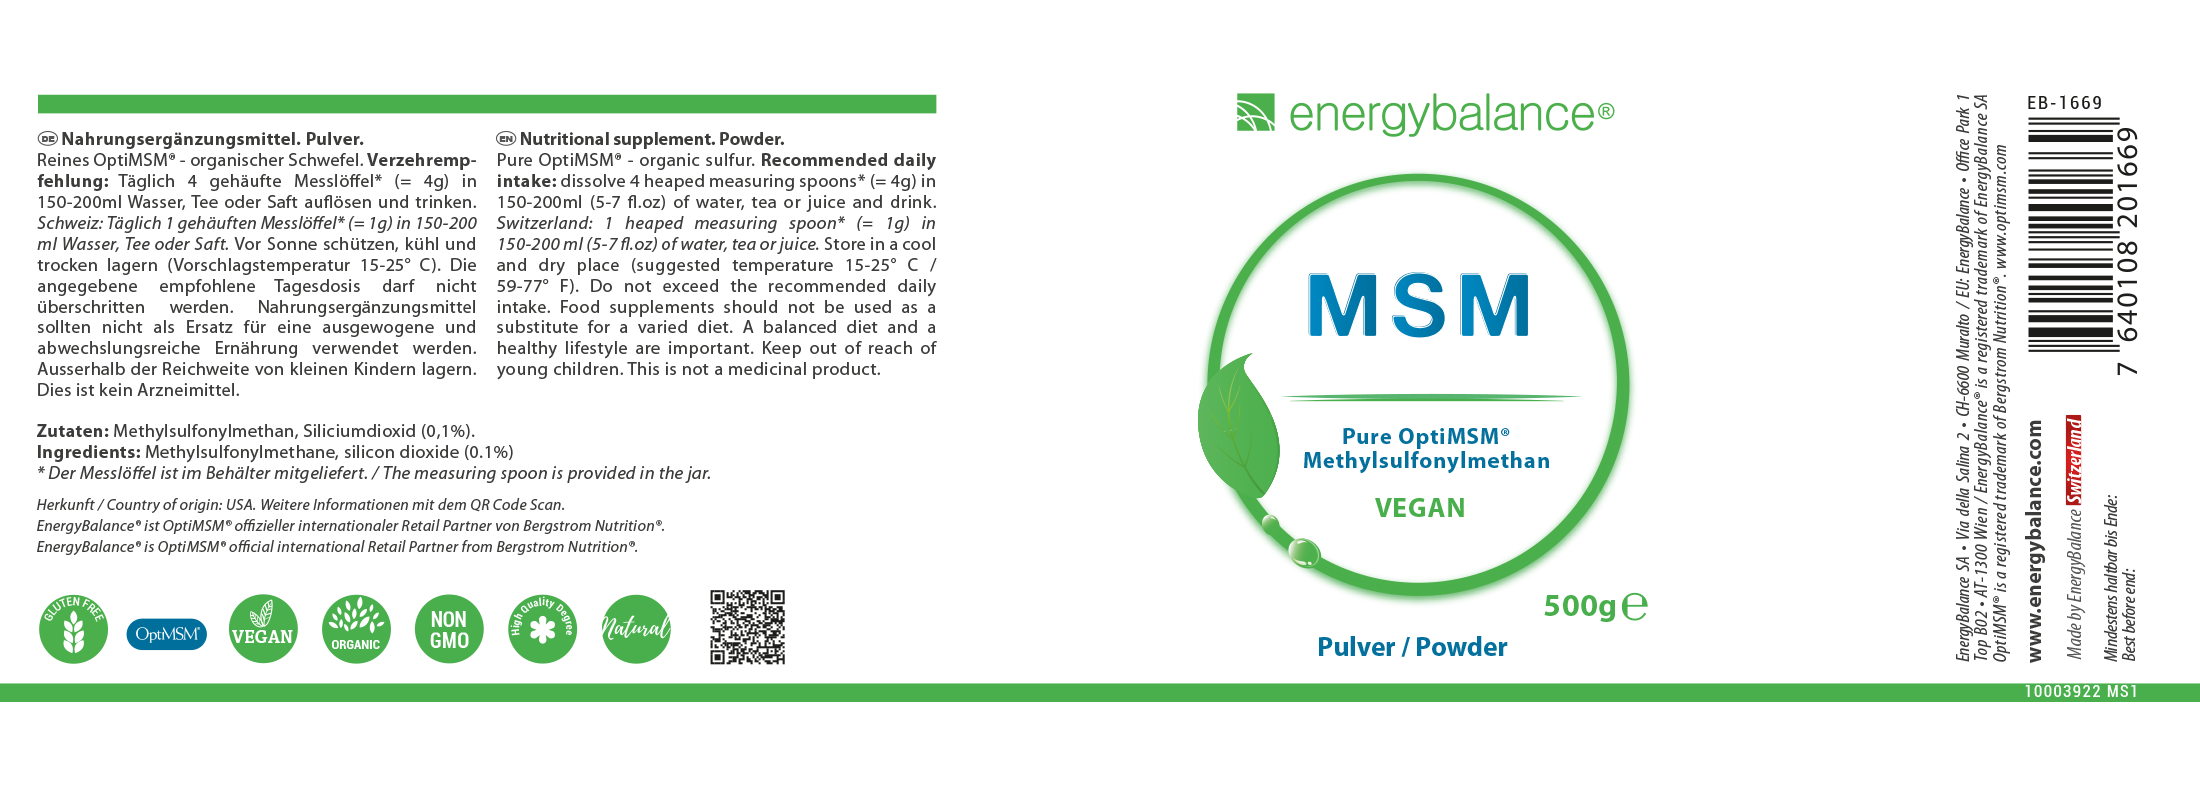 MSM Etikett von Energybalance